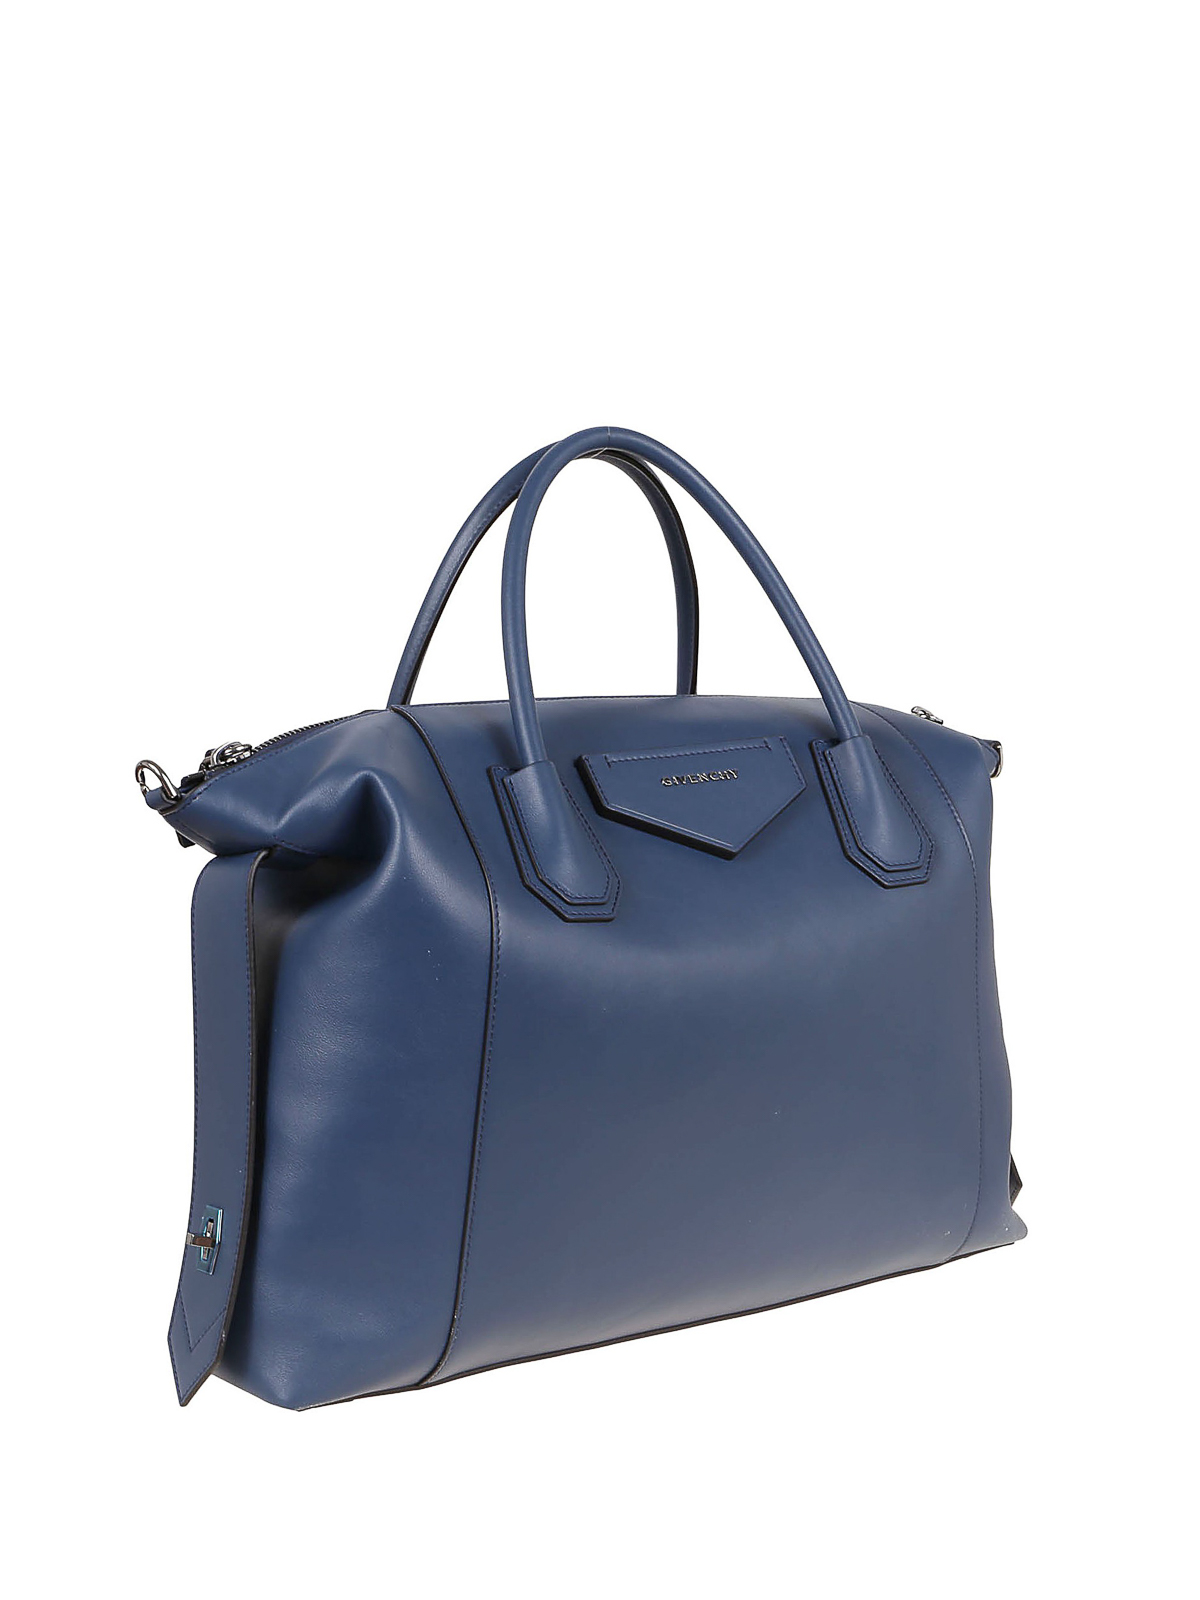 Givenchy Antigona Soft Bag